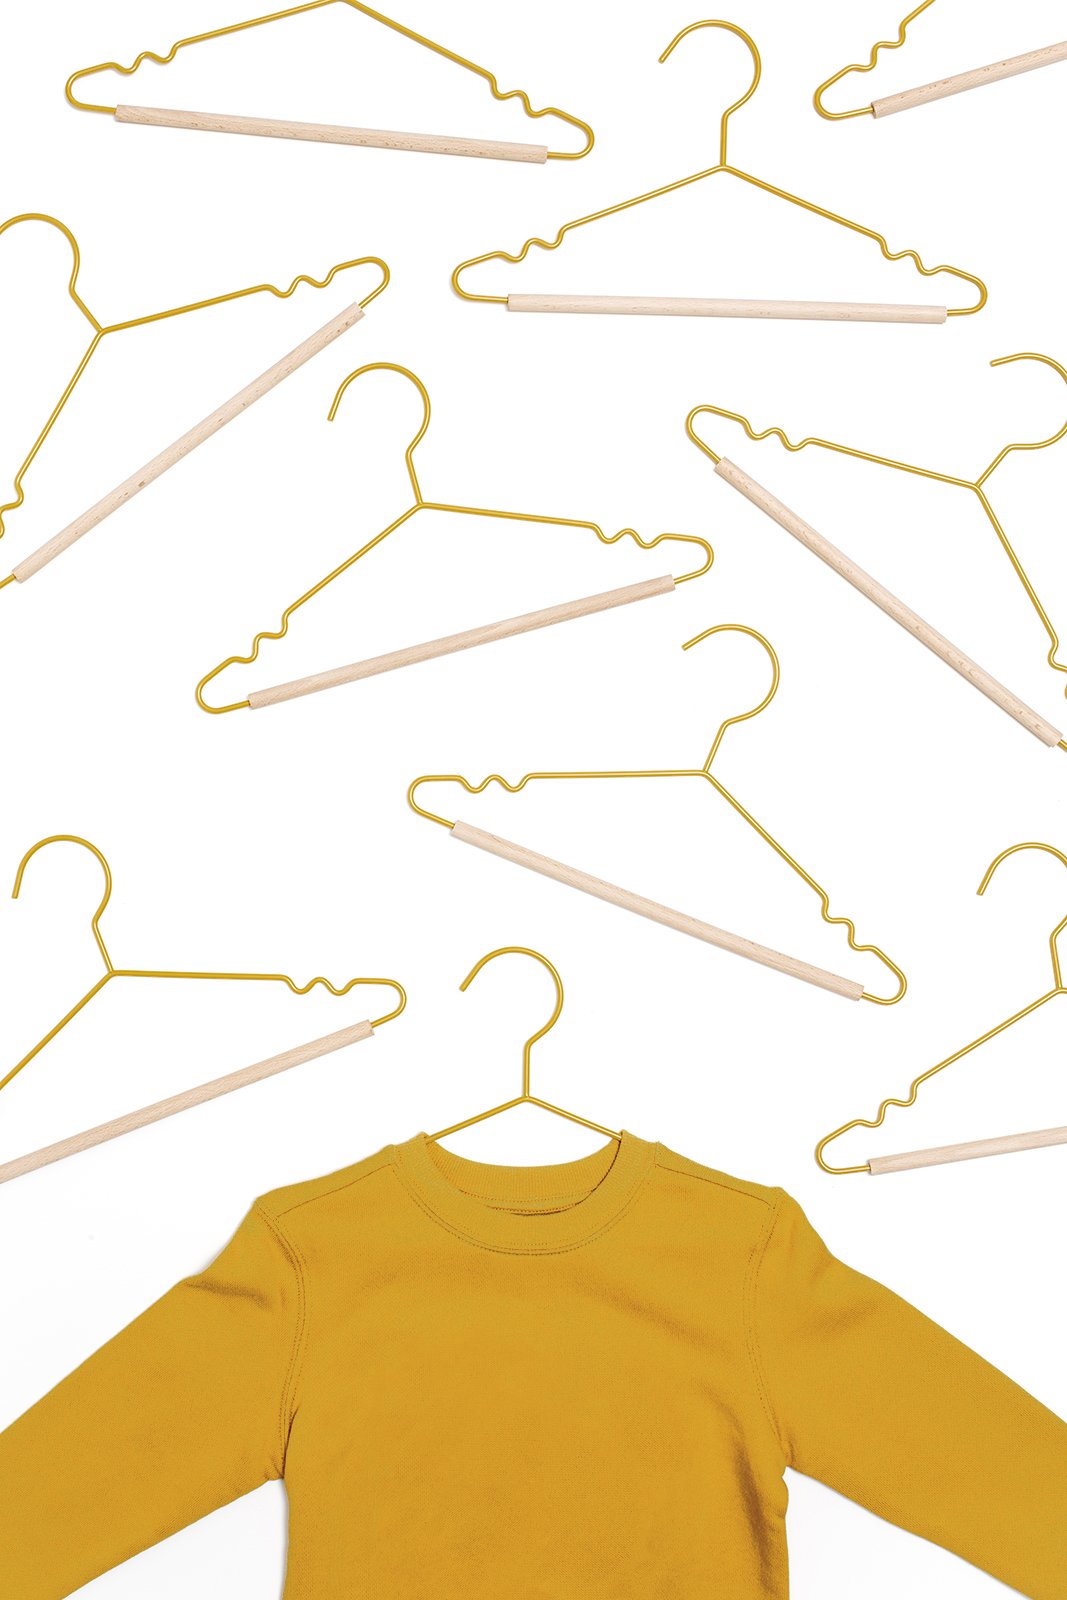 Mustard Made Hangers in Summer - Kids Metal Clothes Hangers